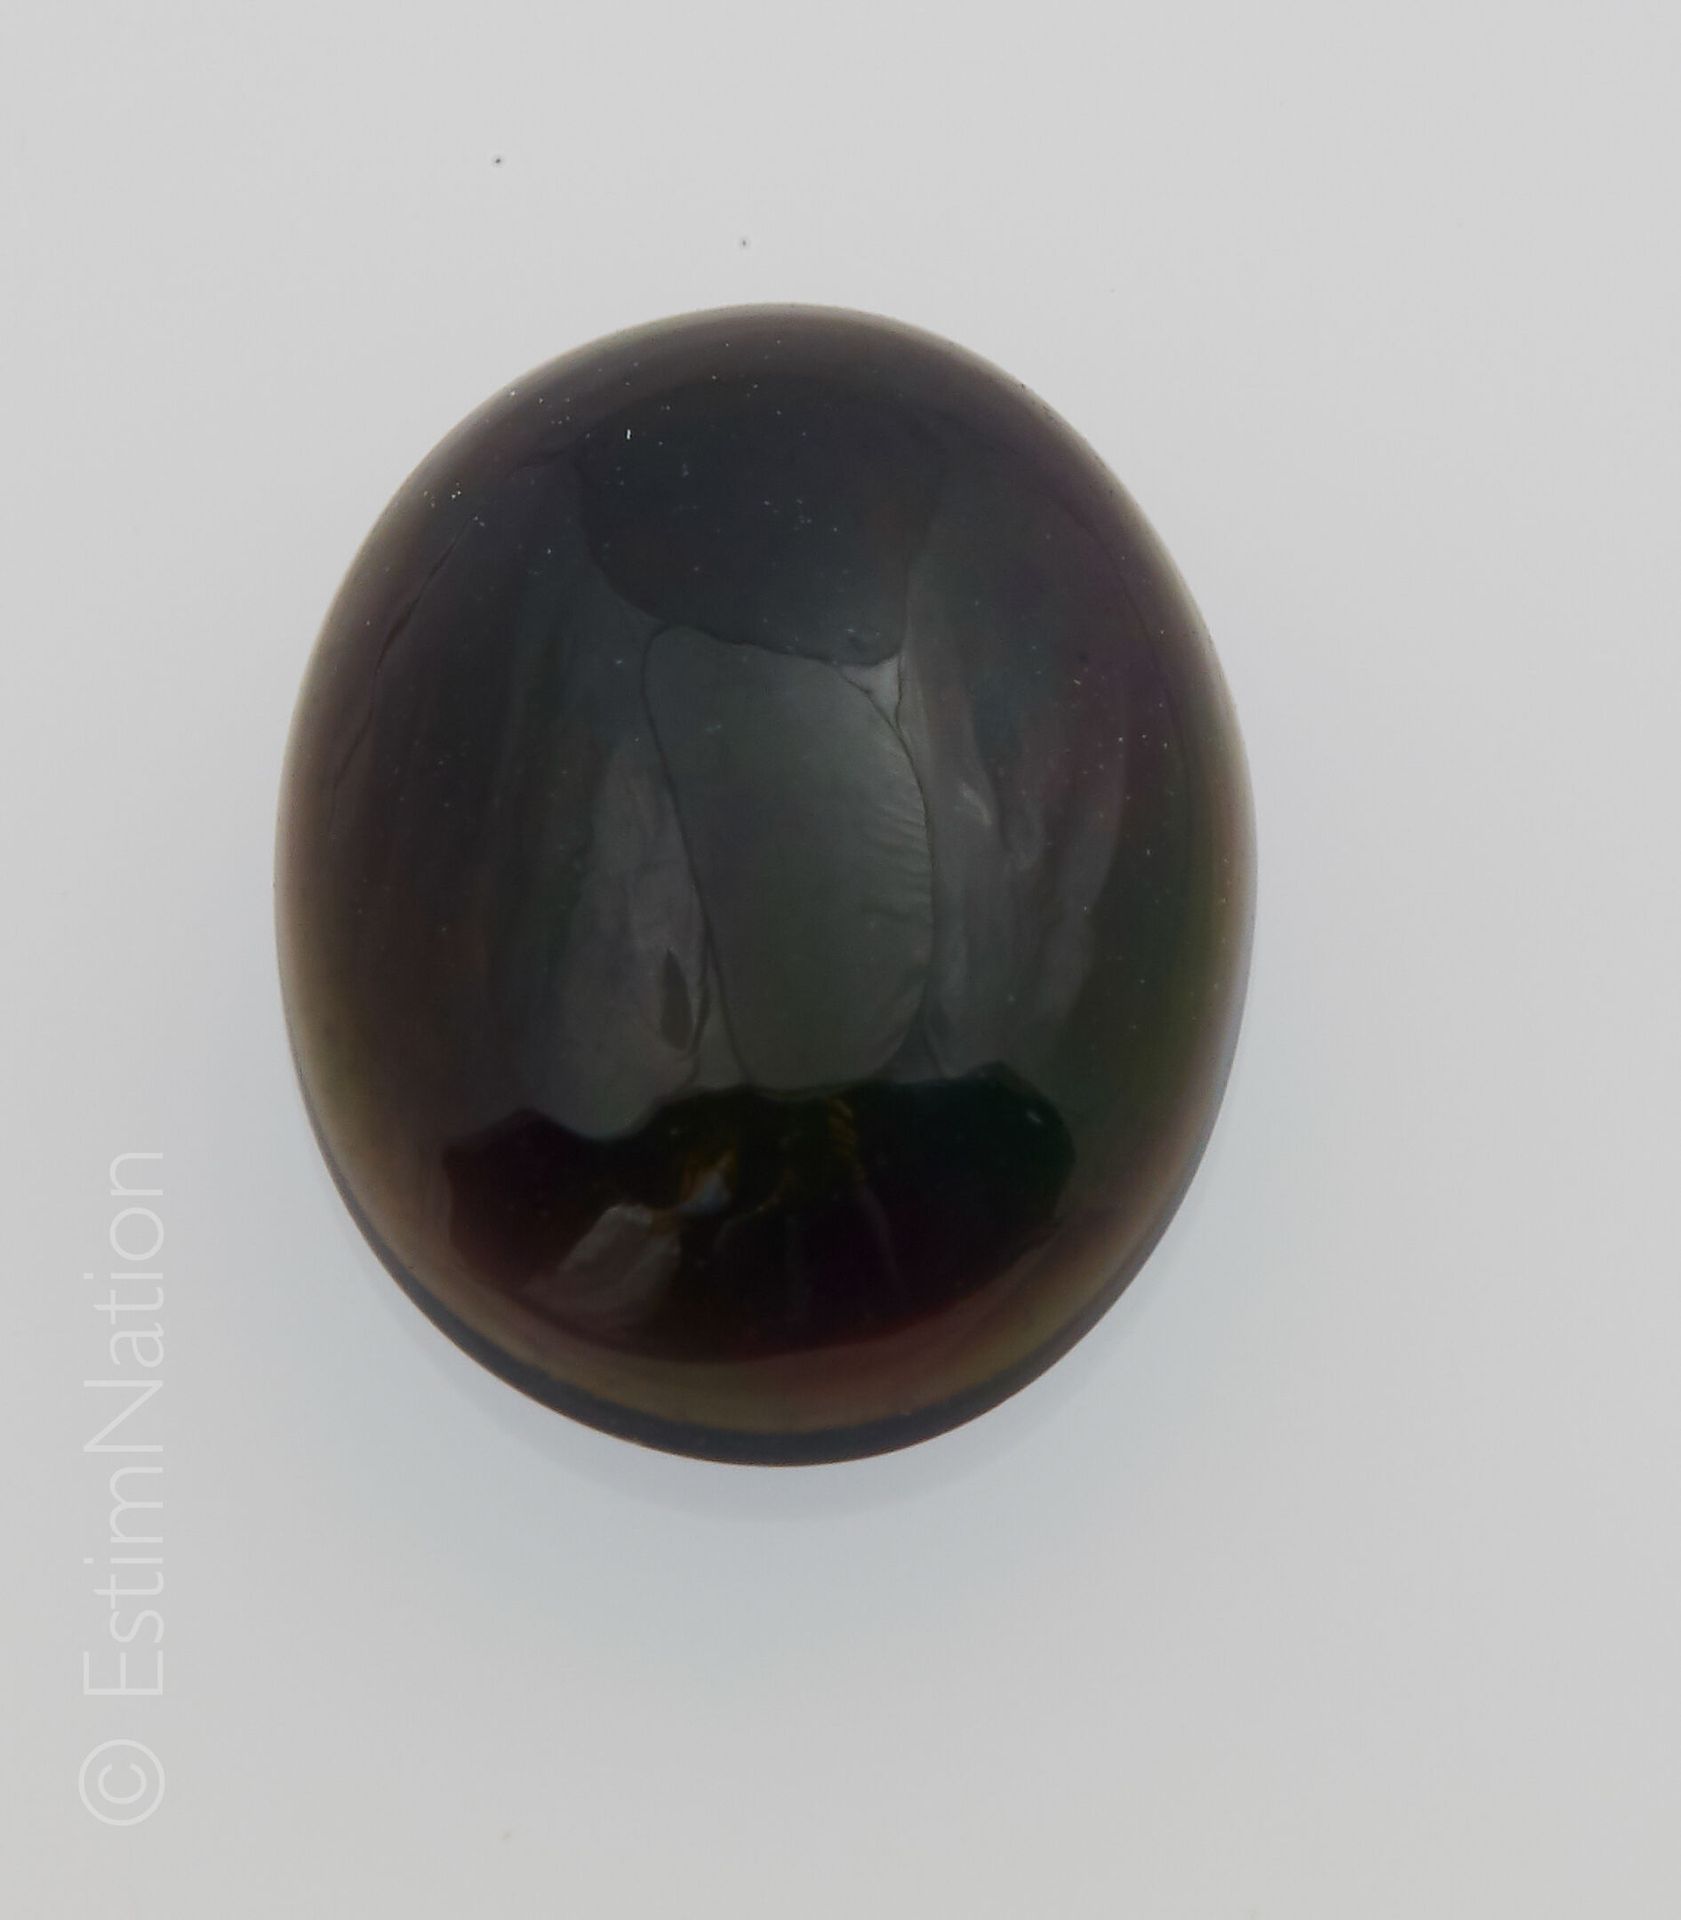 OPALE NOIRE 1.24 CARAT Opale nero ovale cabochon che pesa circa 1,24 ct

Dimensi&hellip;